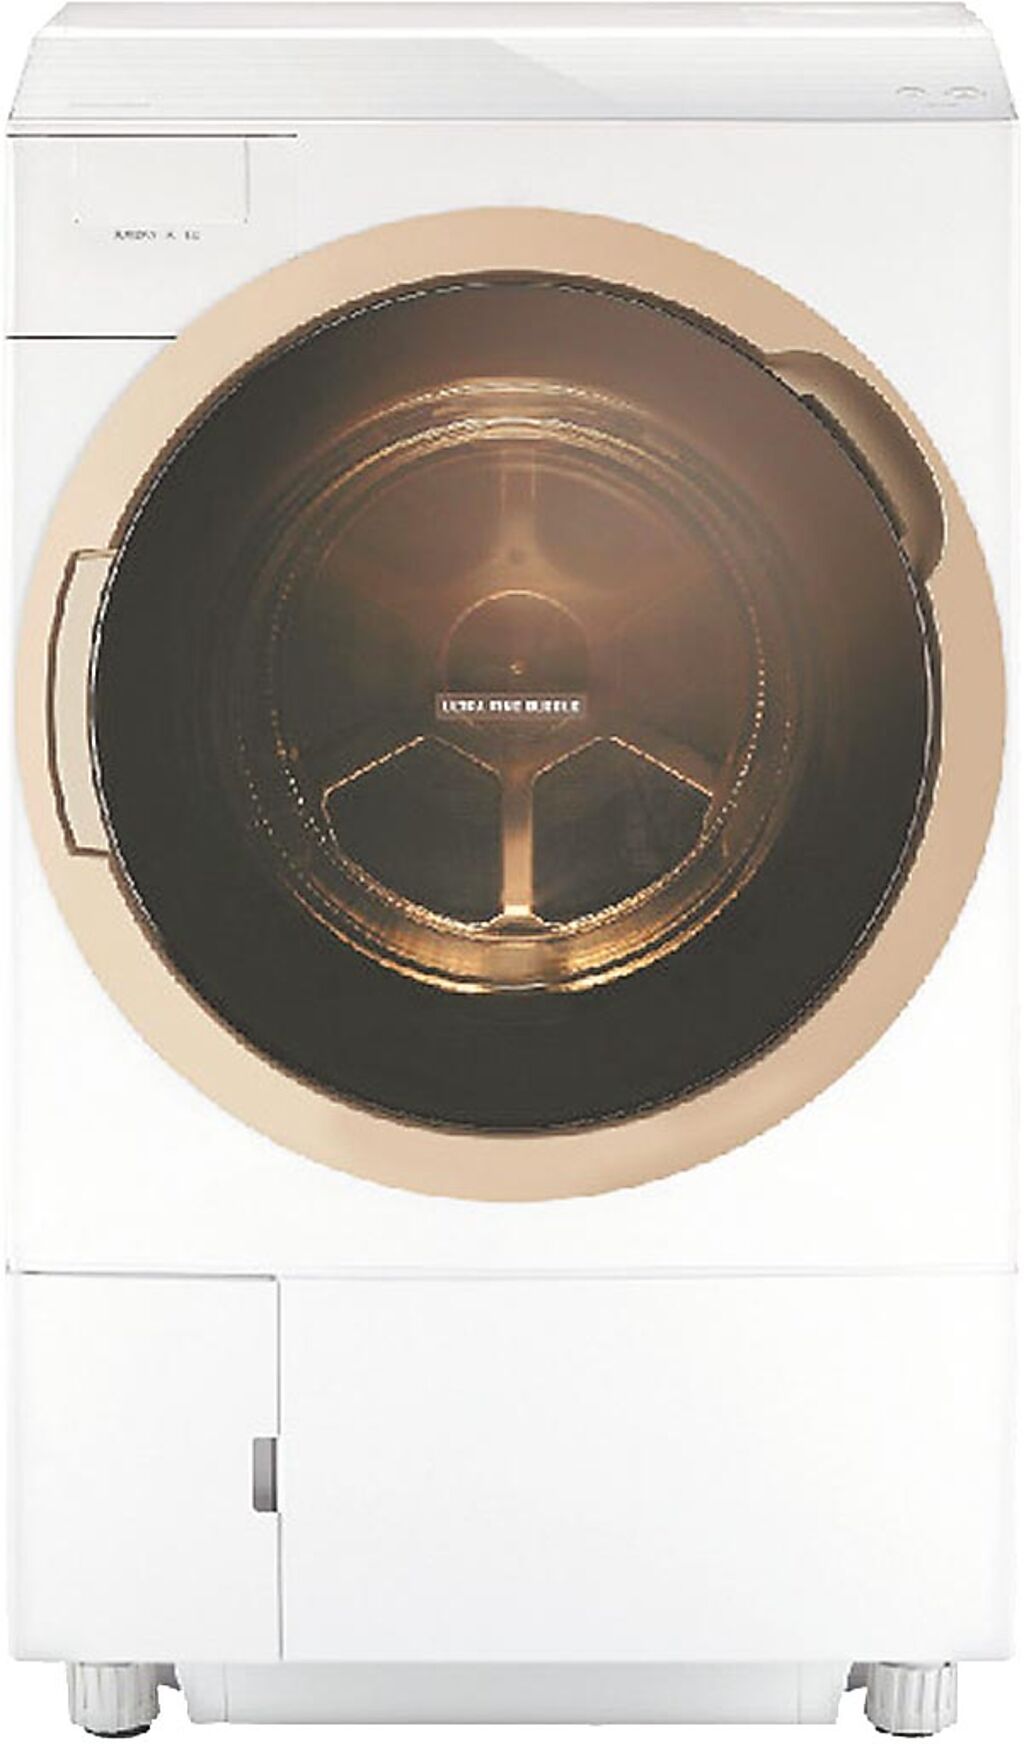 全國電子的TOSHIBA 11KG洗脫烘滾筒洗衣機，原價6萬6900元，特價5萬6900元。（全國電子提供）